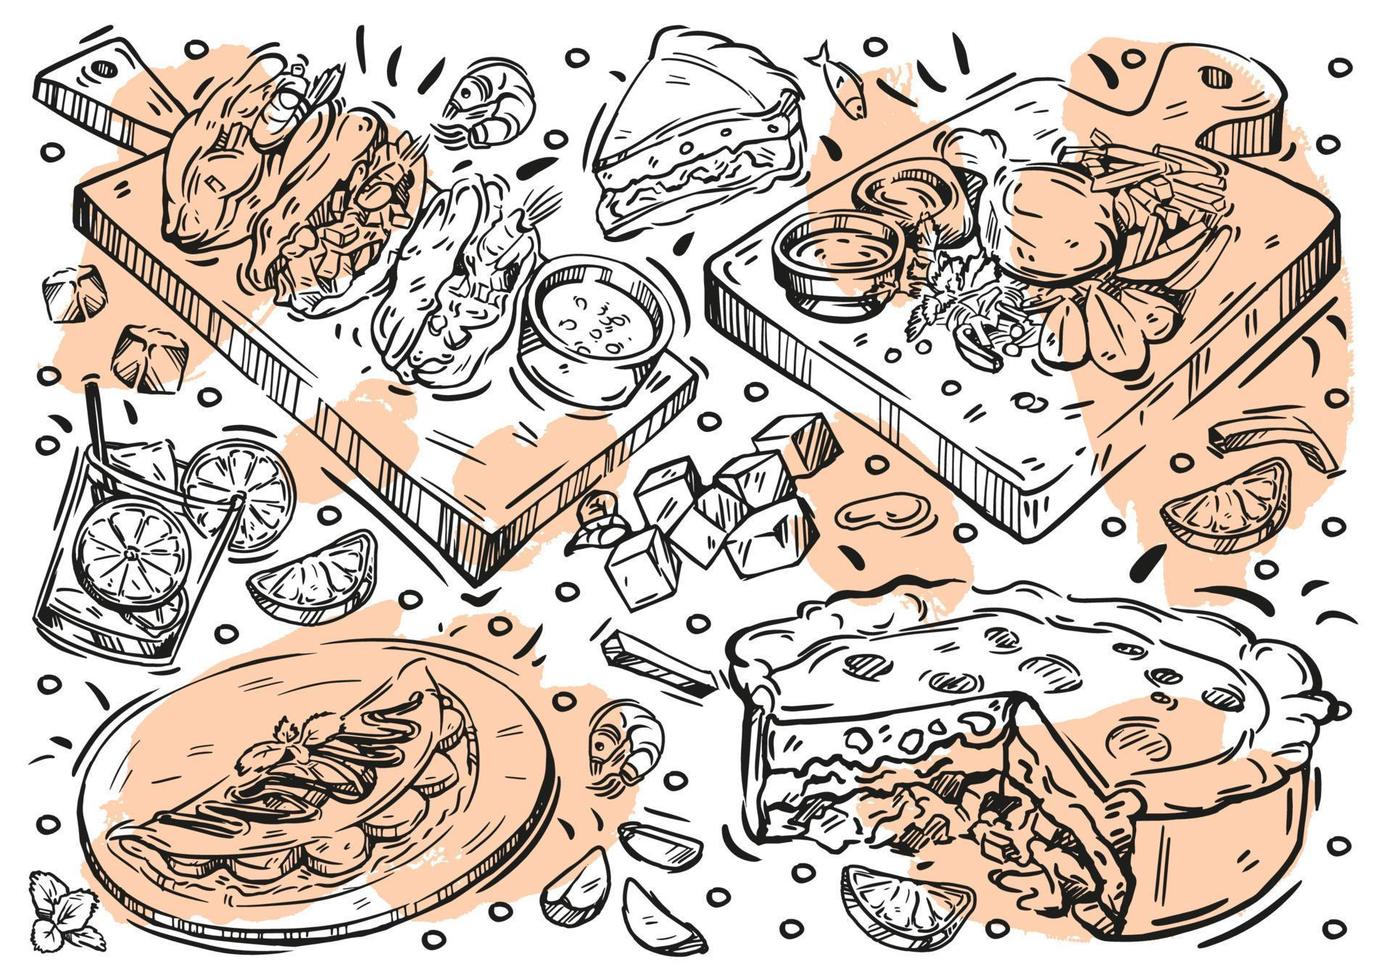 comida de ilustración de vector de línea dibujada a mano. Doodle cocina brasileña, carne asada, salsa vinagreta, estofado de pescado, buñuelos de frijoles caritas, pastel de pollo, bebida caipirinha, panqueques con plátano